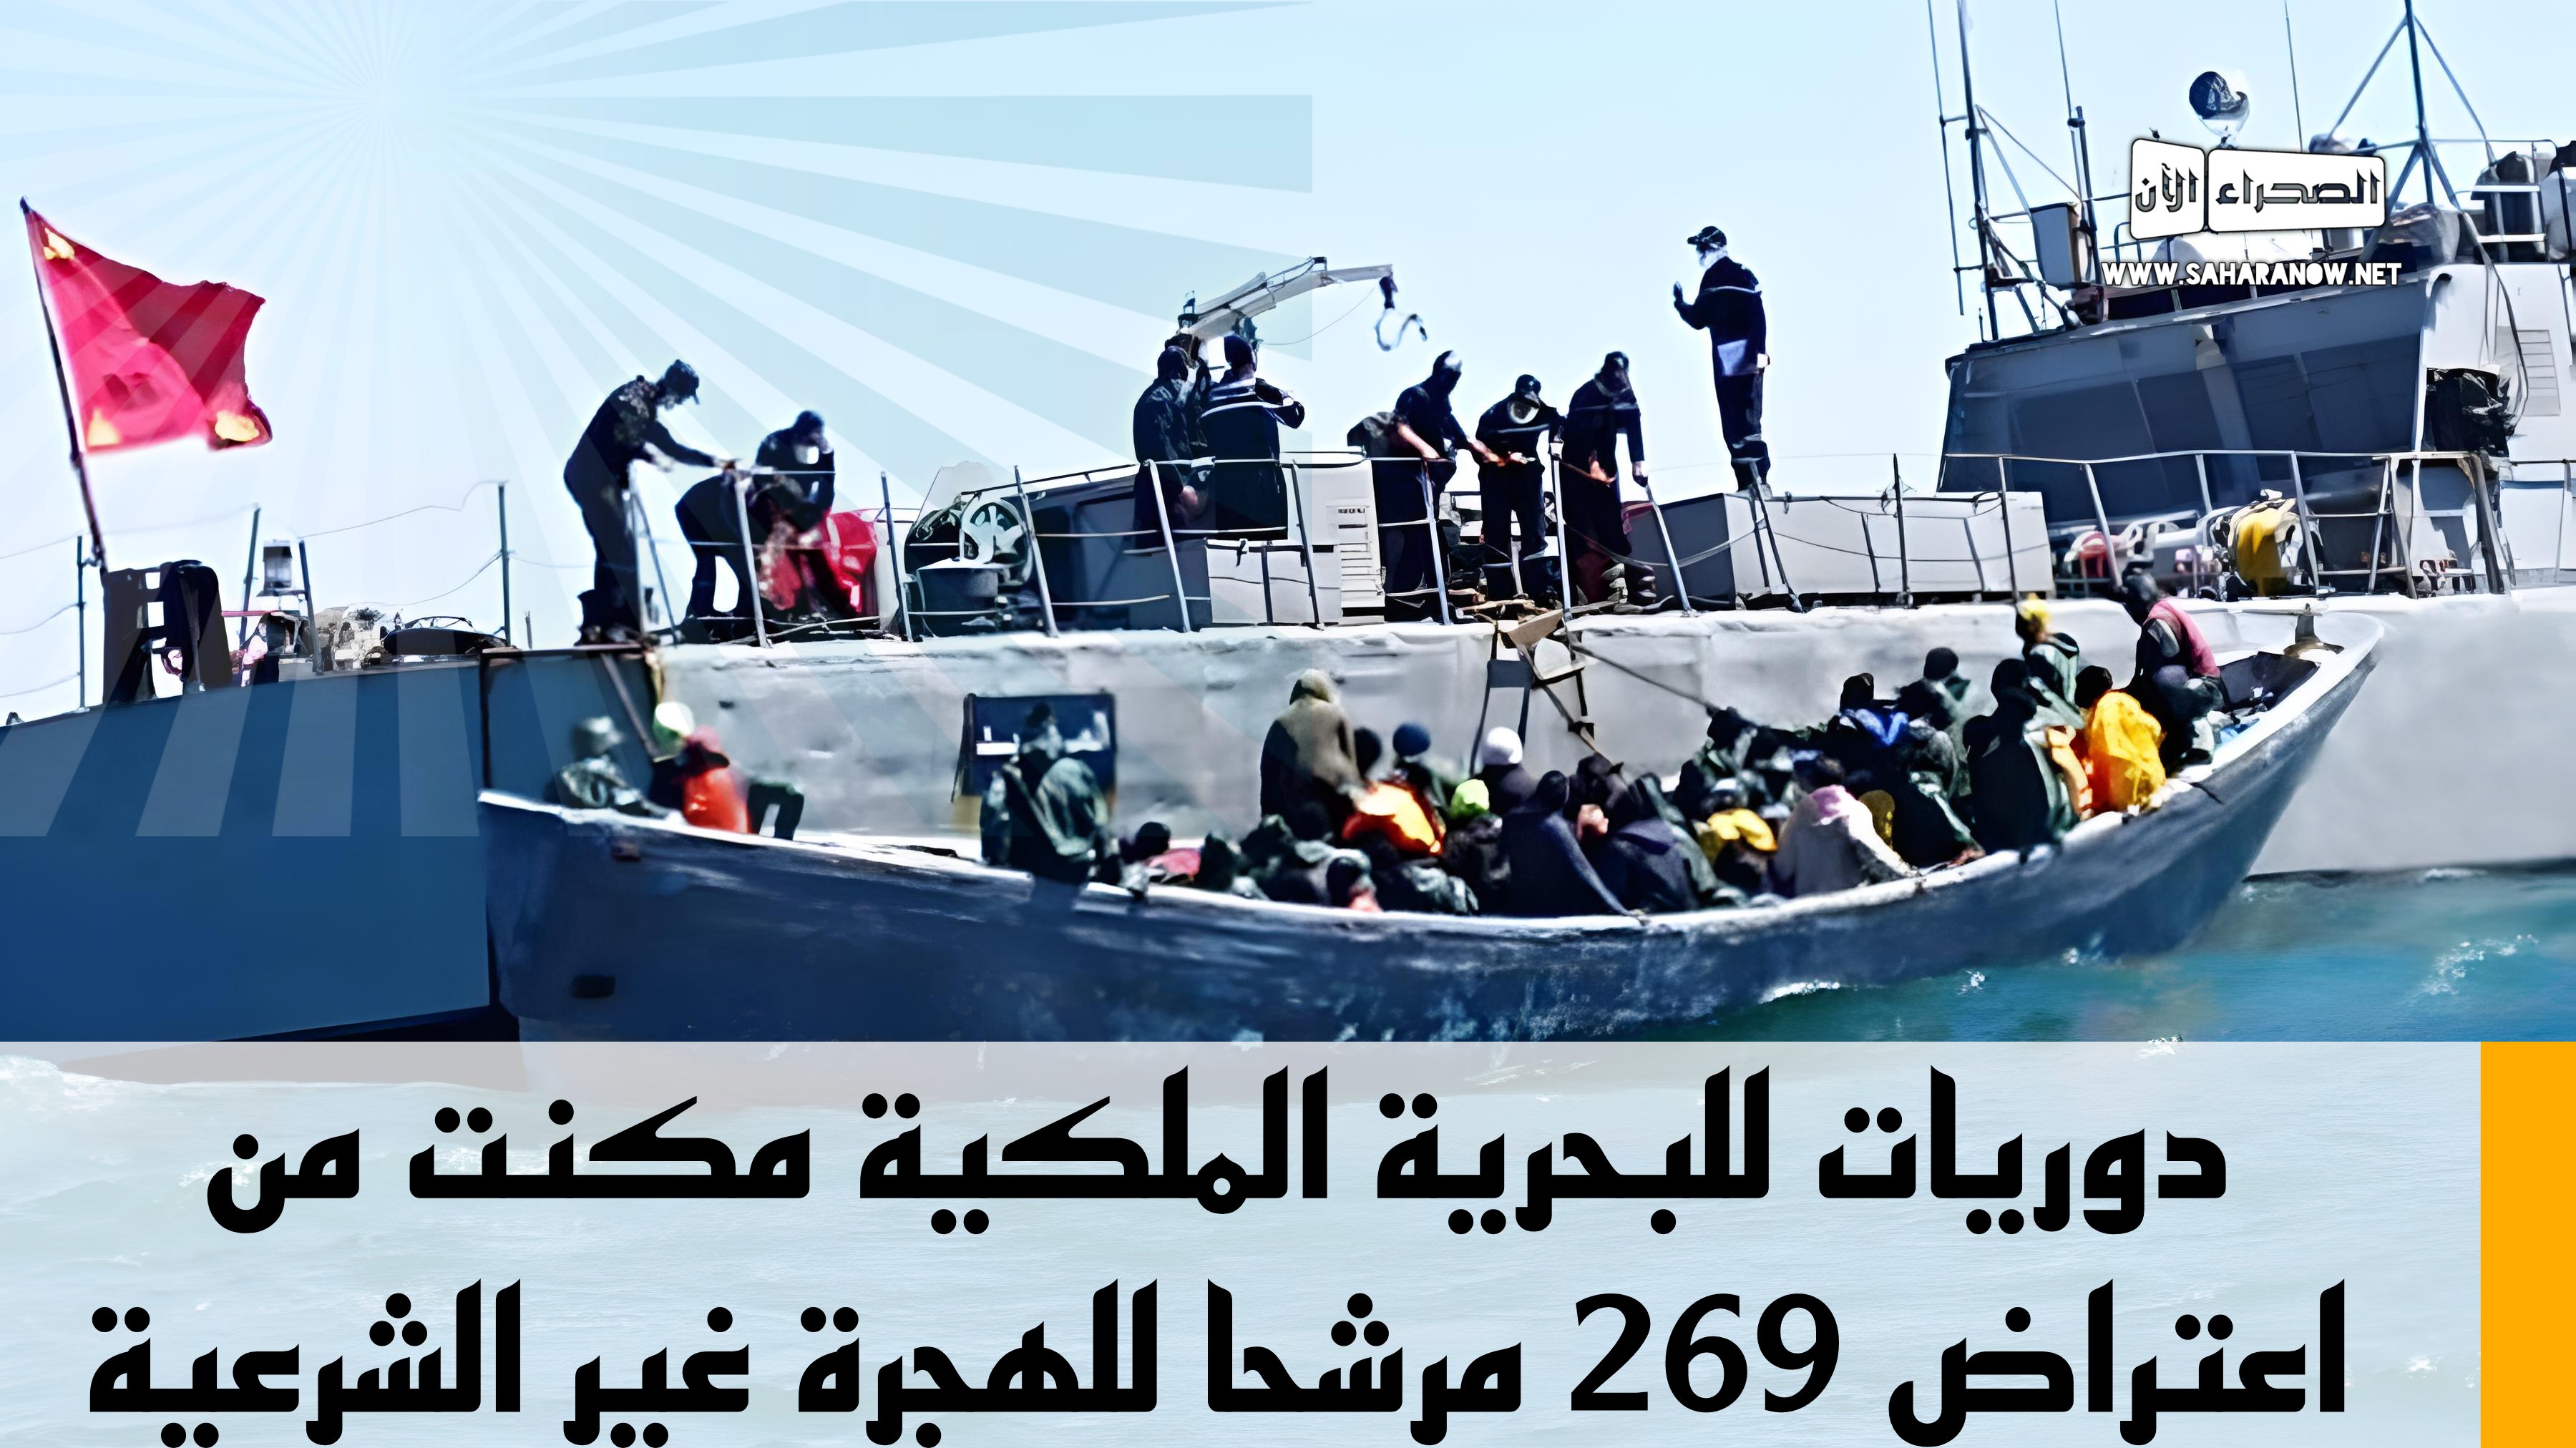 دوريات للبحرية الملكية مكنت من اعتراض 269 مرشحا للهجرة غير الشرعية